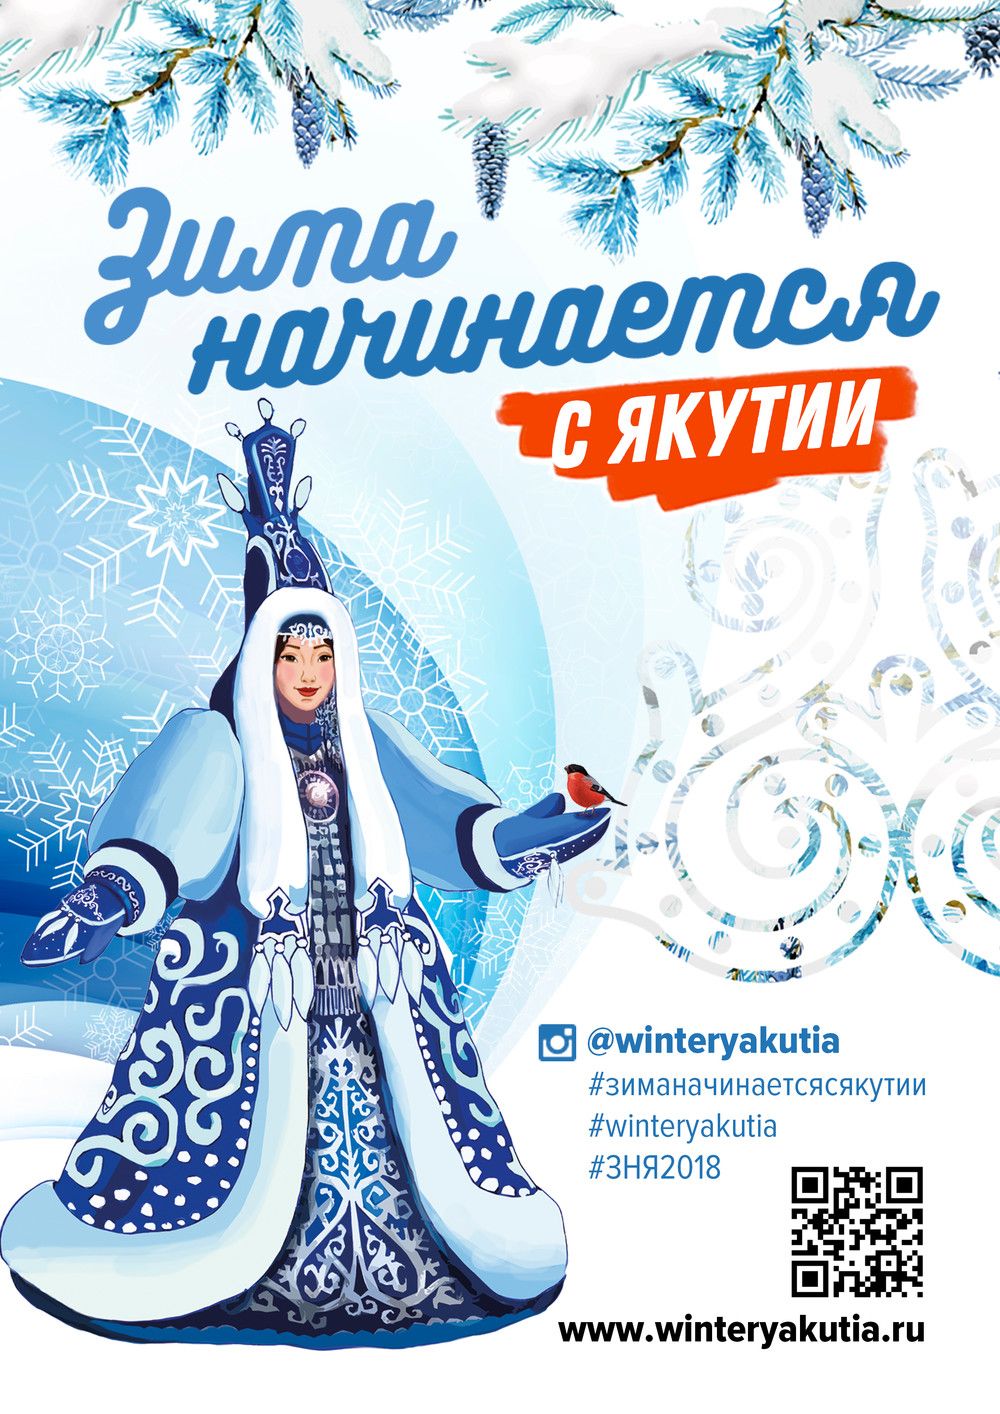 Сардана Авксентьева о фестивале  «Зима начинается с Якутии»: «Мы должны создать атмосферу праздника в городе»